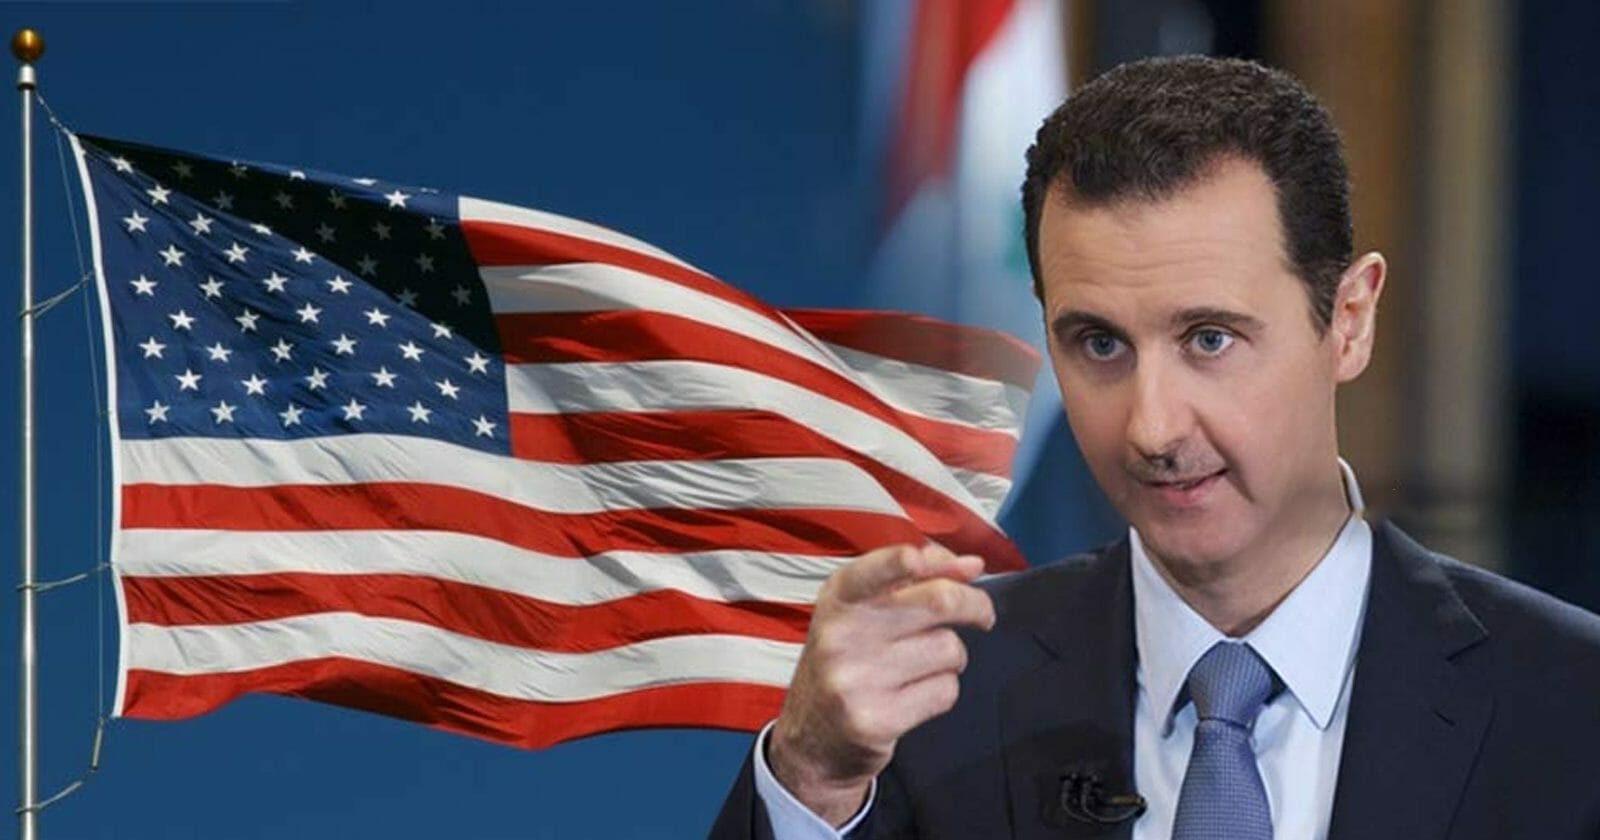 مشروع قانون أمريكي لمكافحة التطبيع مع "الأسد".. تحذير للدول العربية على رأسها الإمارات! watanserb.com